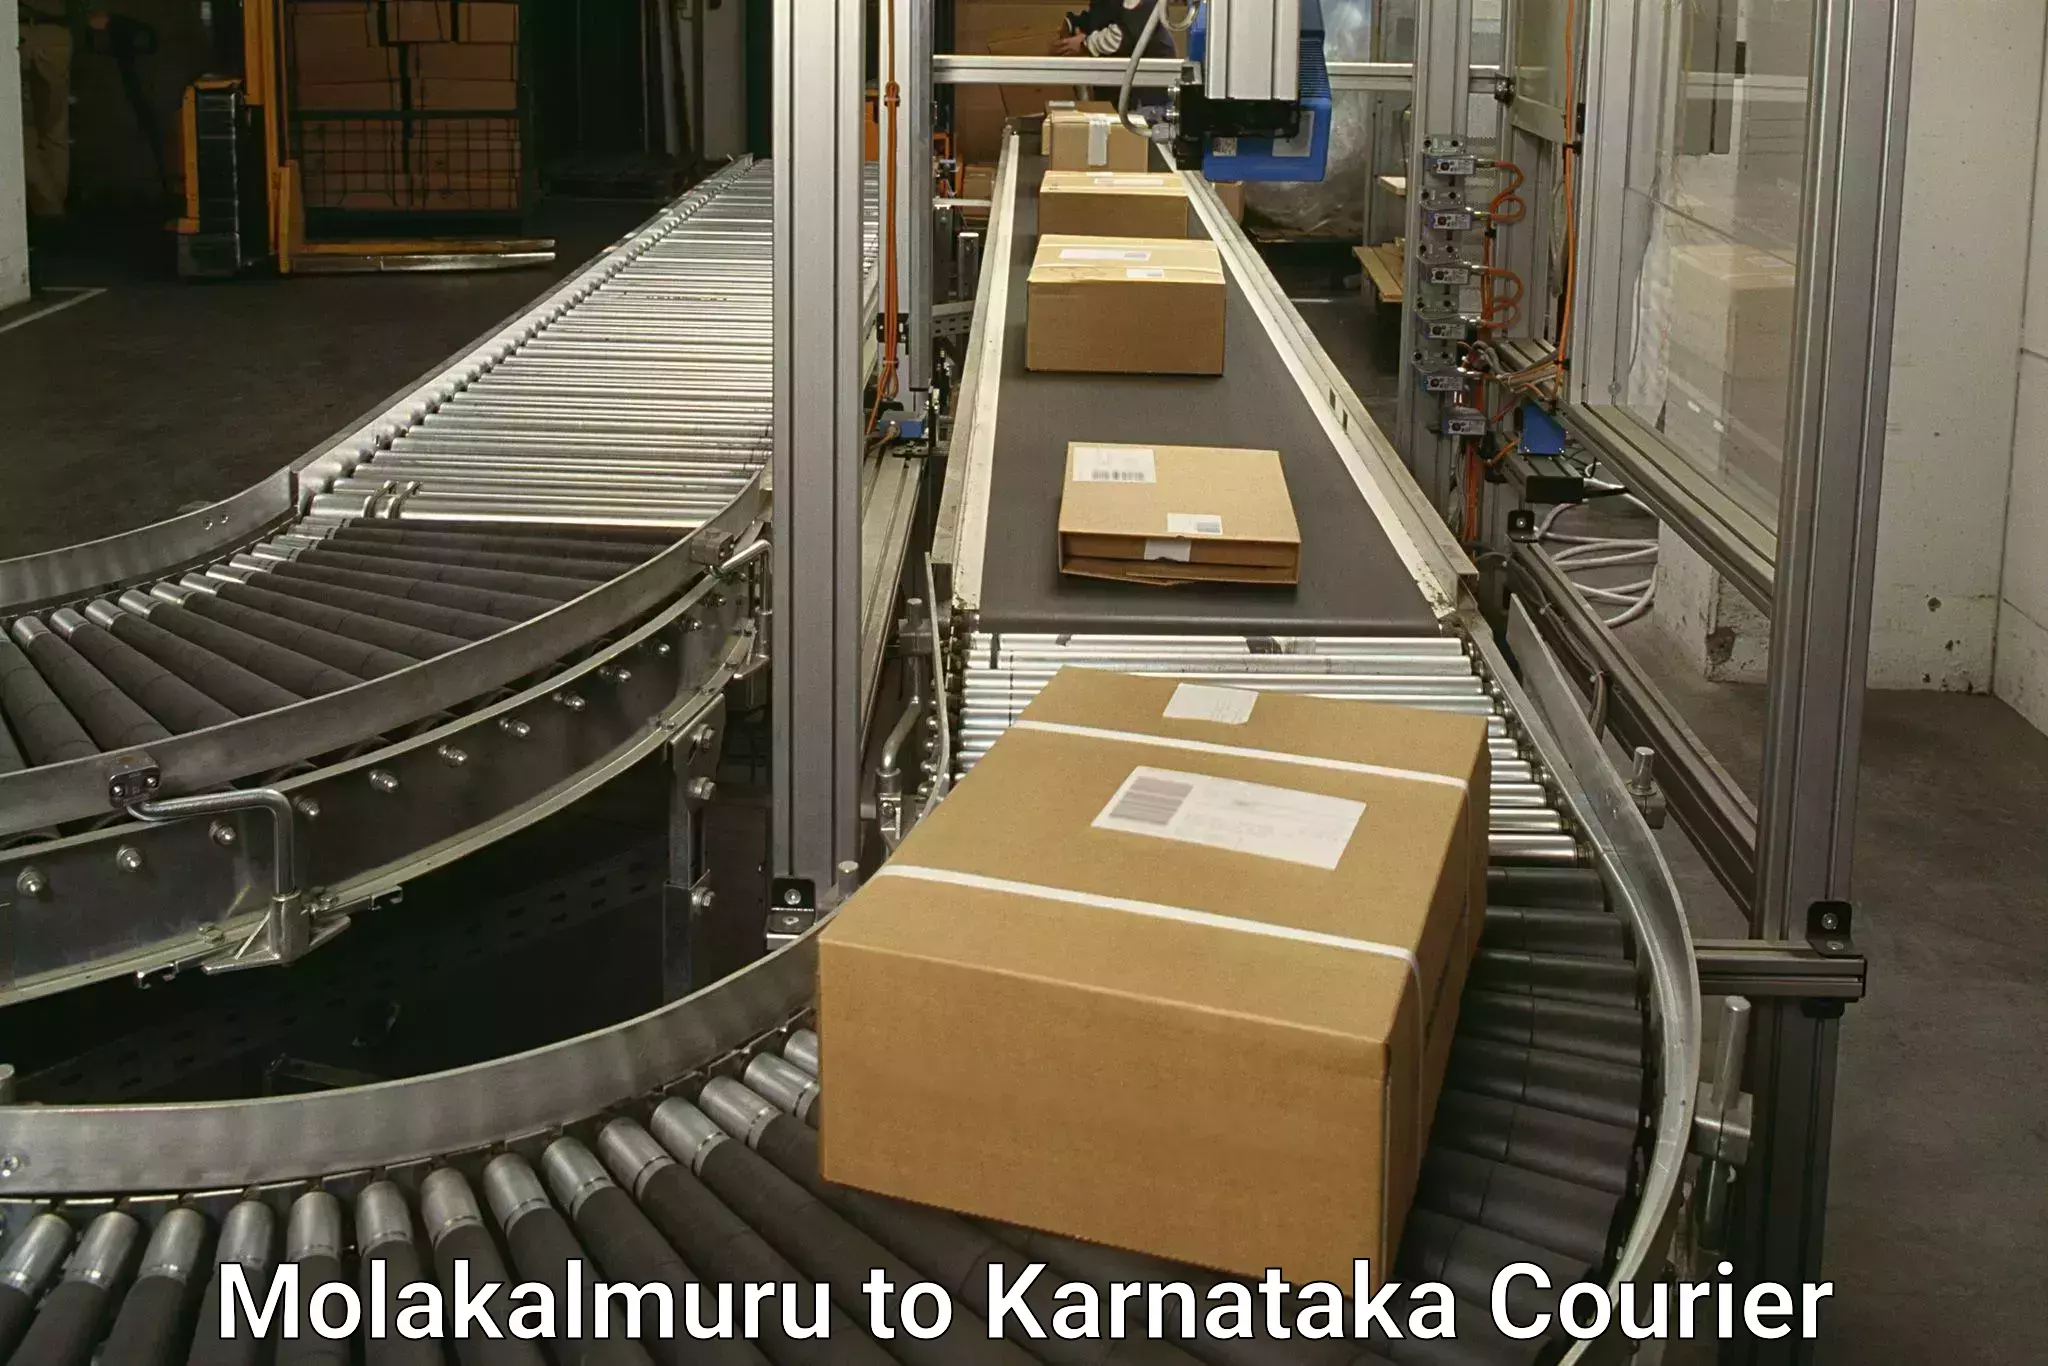 Smart courier technologies Molakalmuru to Karnataka